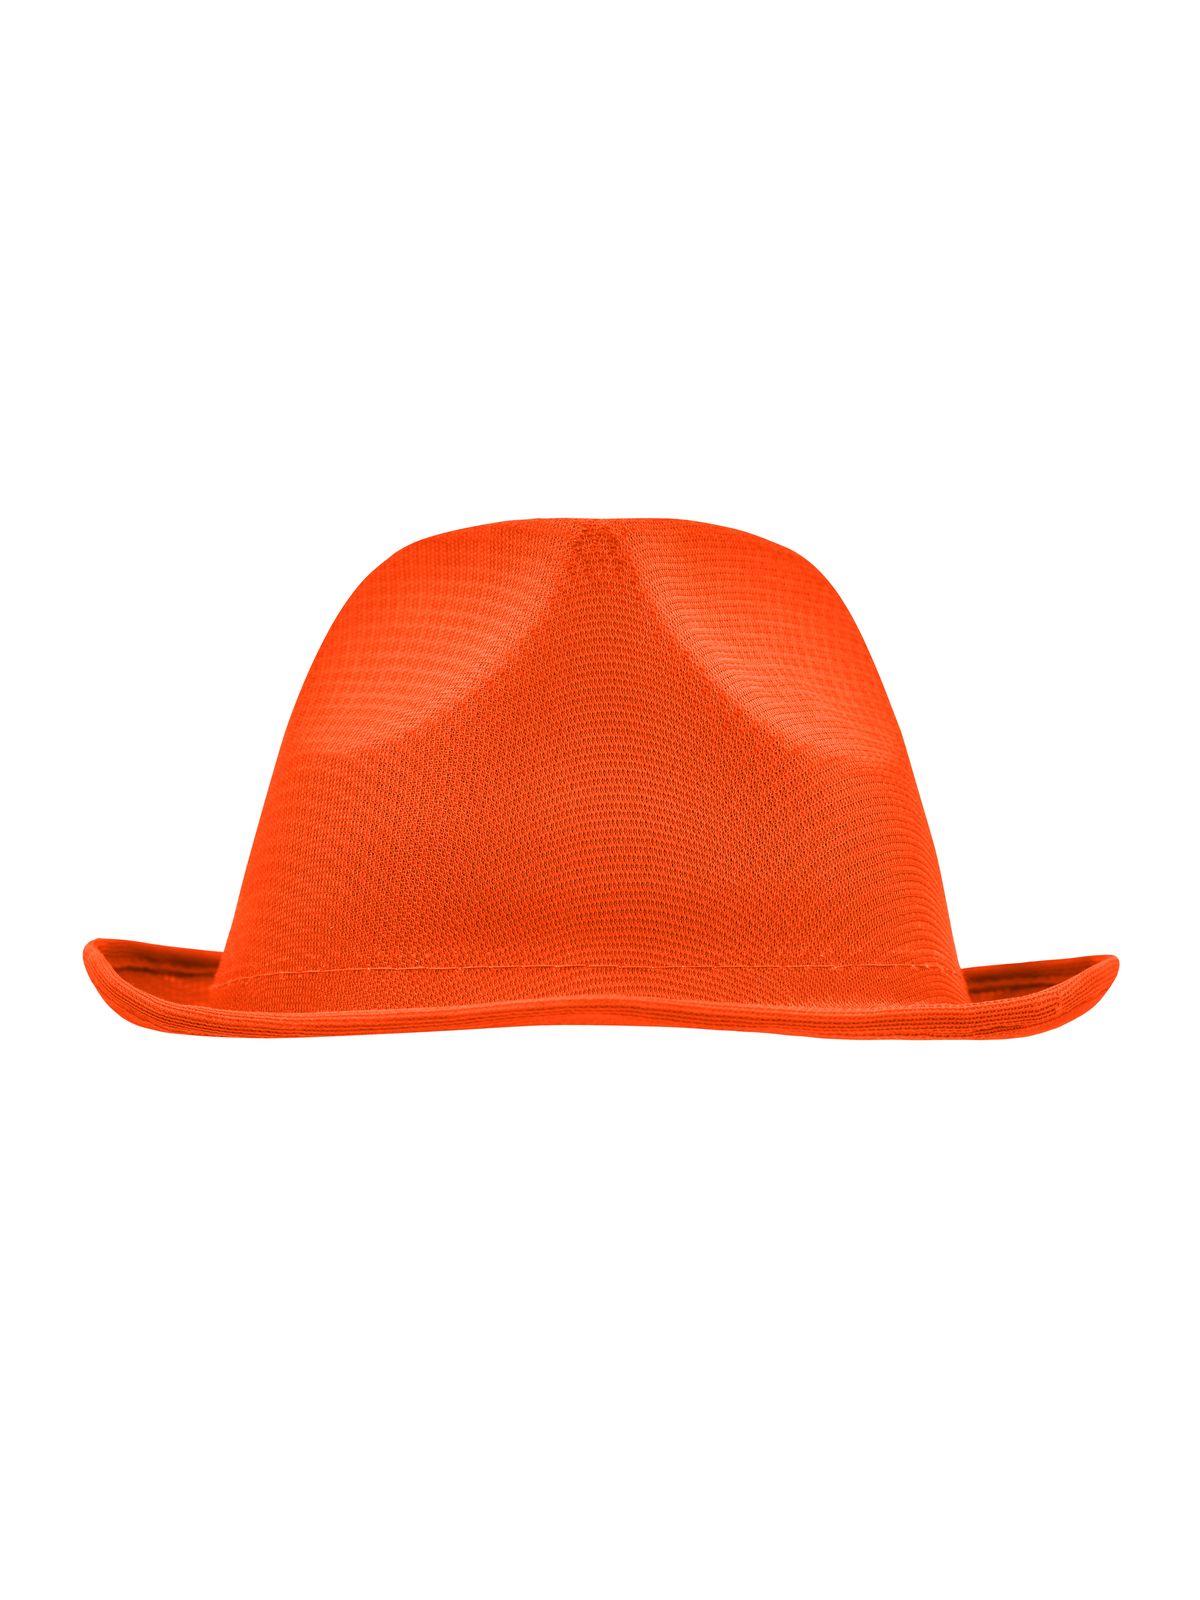 promotion-hat-orange.webp